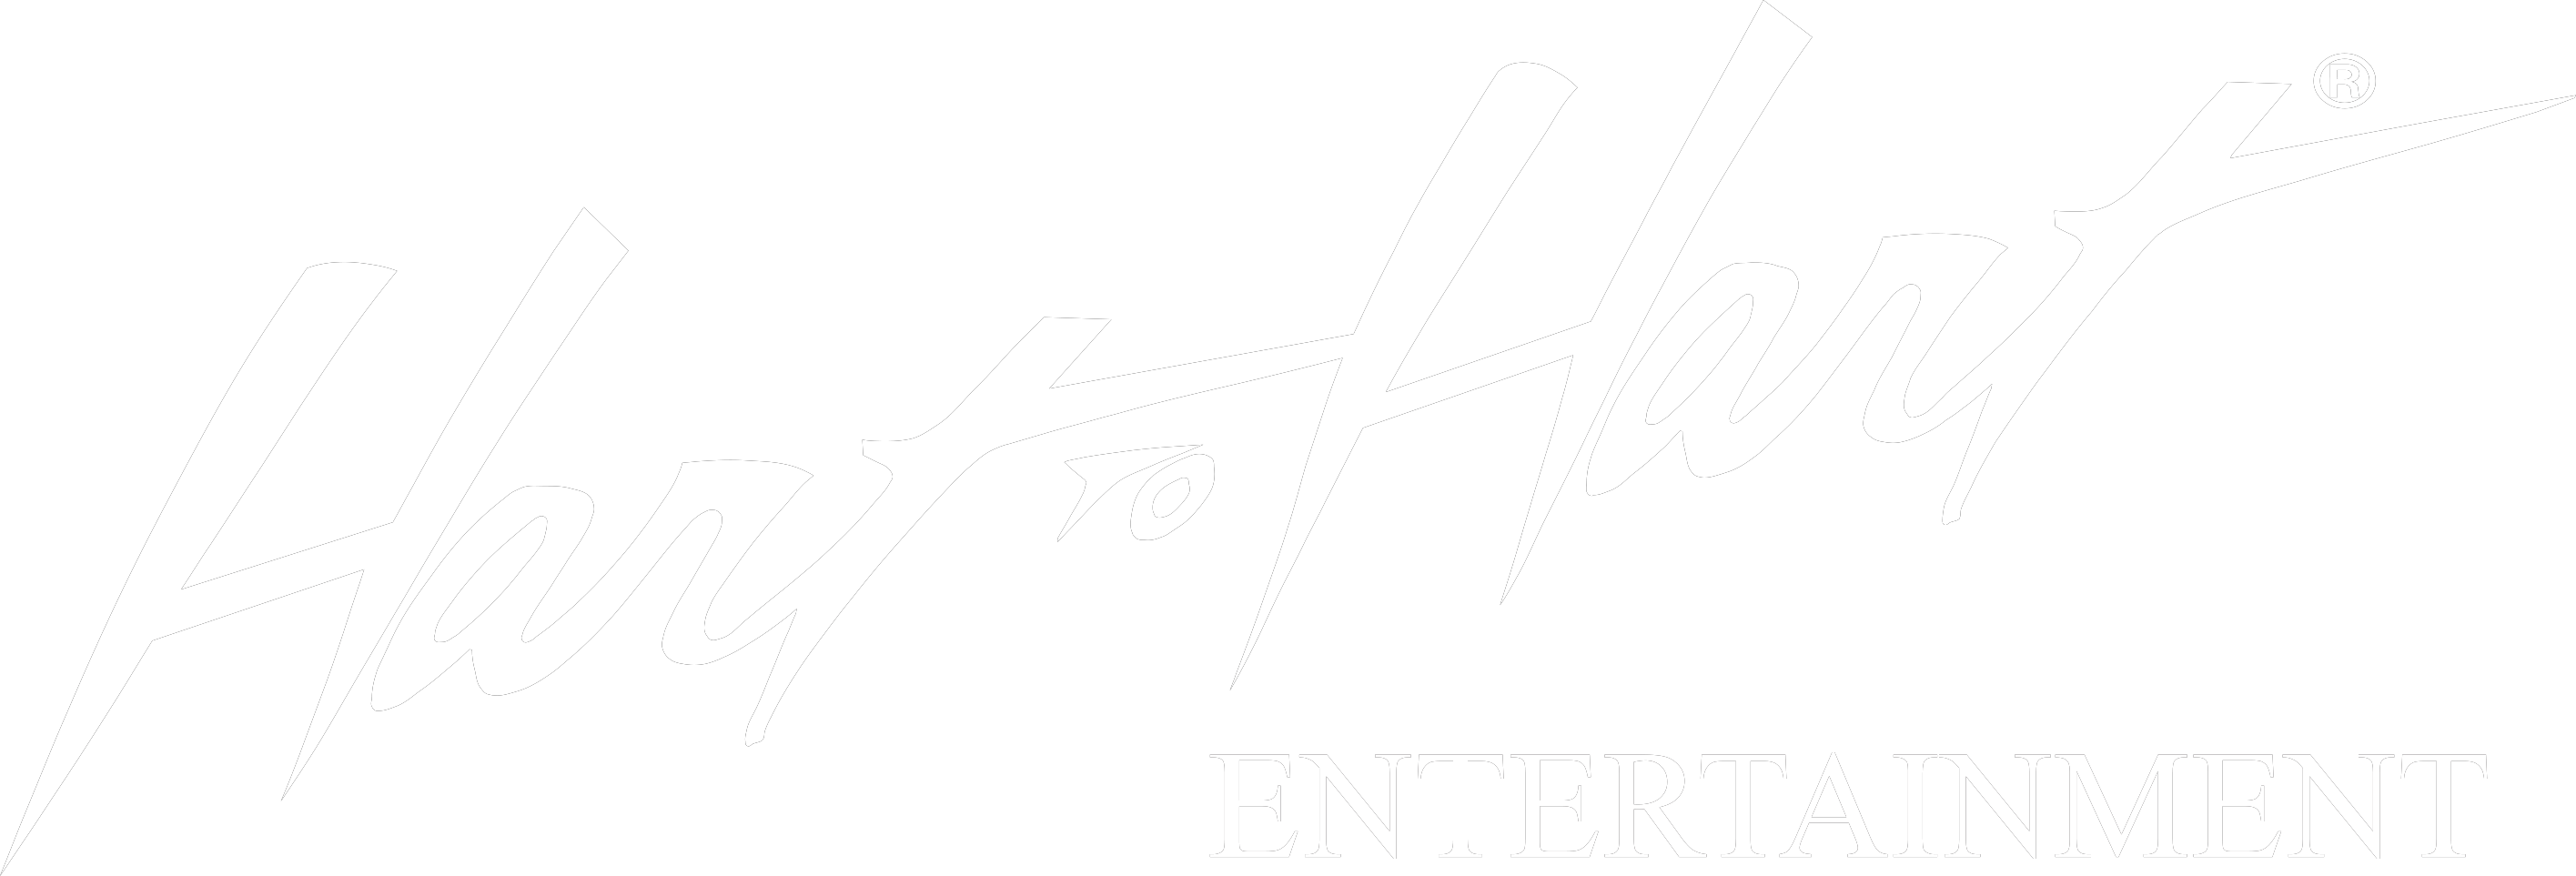 Hart Logo - Hart To Hart Logo White - Hart to Hart